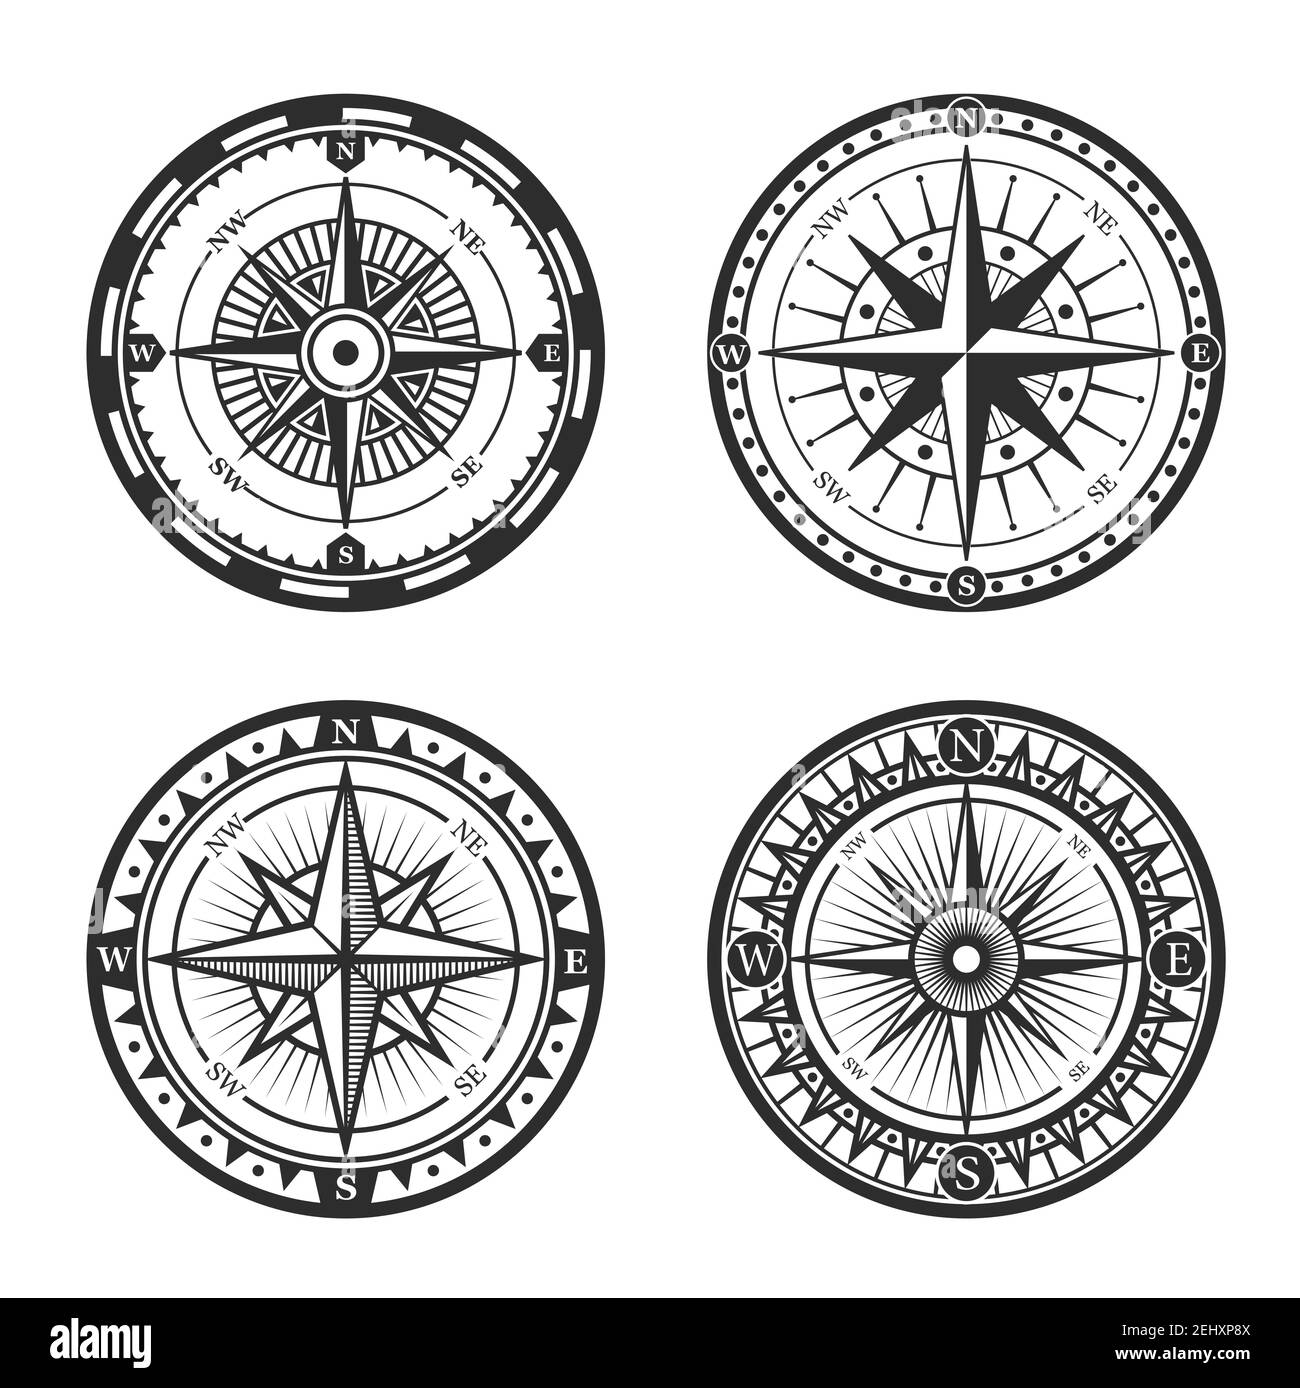 Vintage nautischen Kompass Rosen oder Windrosen mit sternförmigen Karte Zeiger der Nord-, Ost-, Süd-und West-Windrichtungen. Seeschifffahrt, Marine hera Stock Vektor